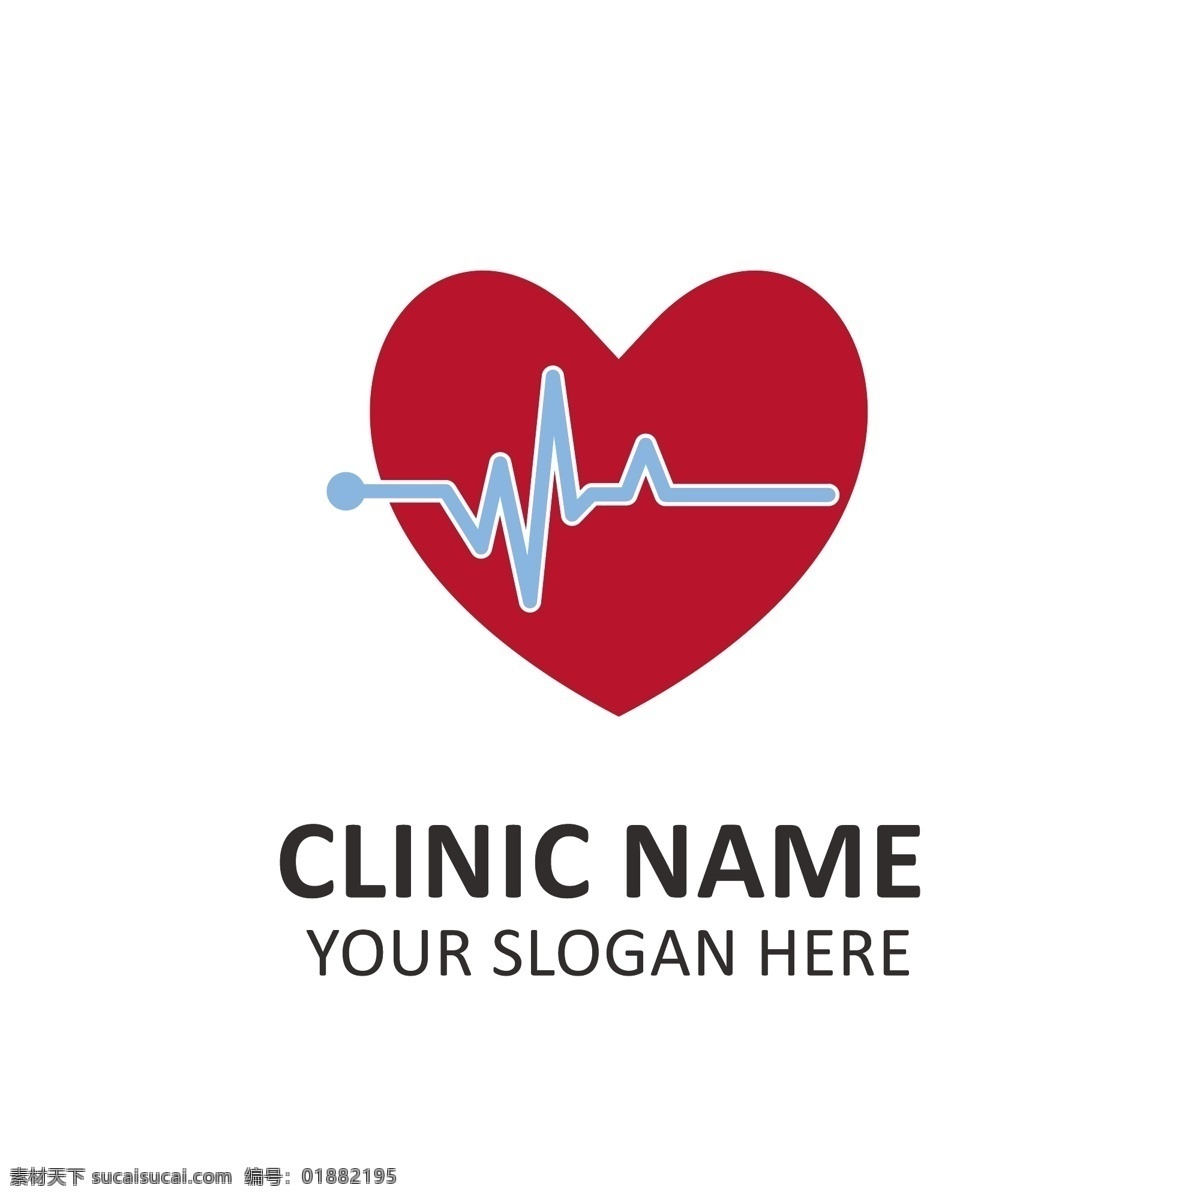 心形 医院 标志 模板 标识 心脏 医疗 健康 交叉 企业 医药 制药 企业身份 身份 诊所 标志模板 口号 形状 白色